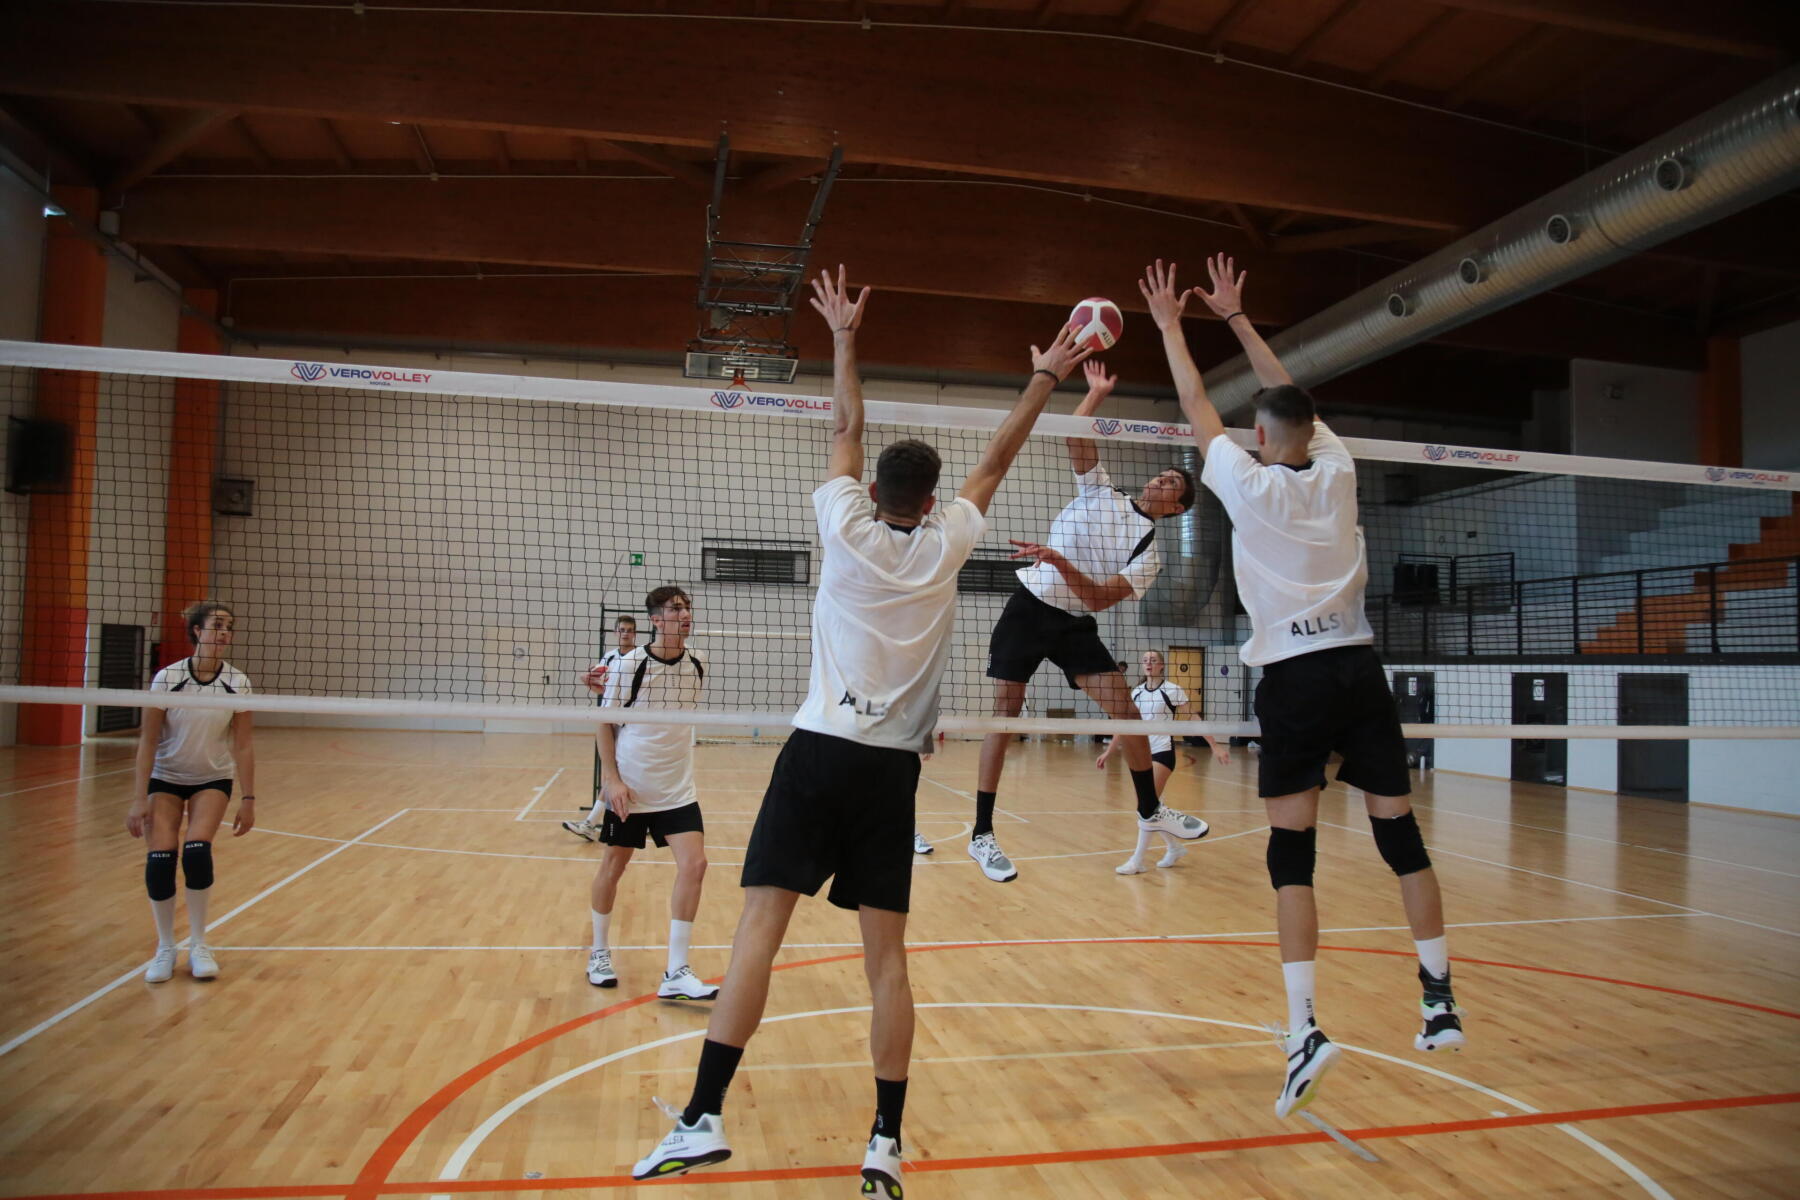 point-de-volleyball-se-jouant-au-filet-entre-deux-équipes-masculines